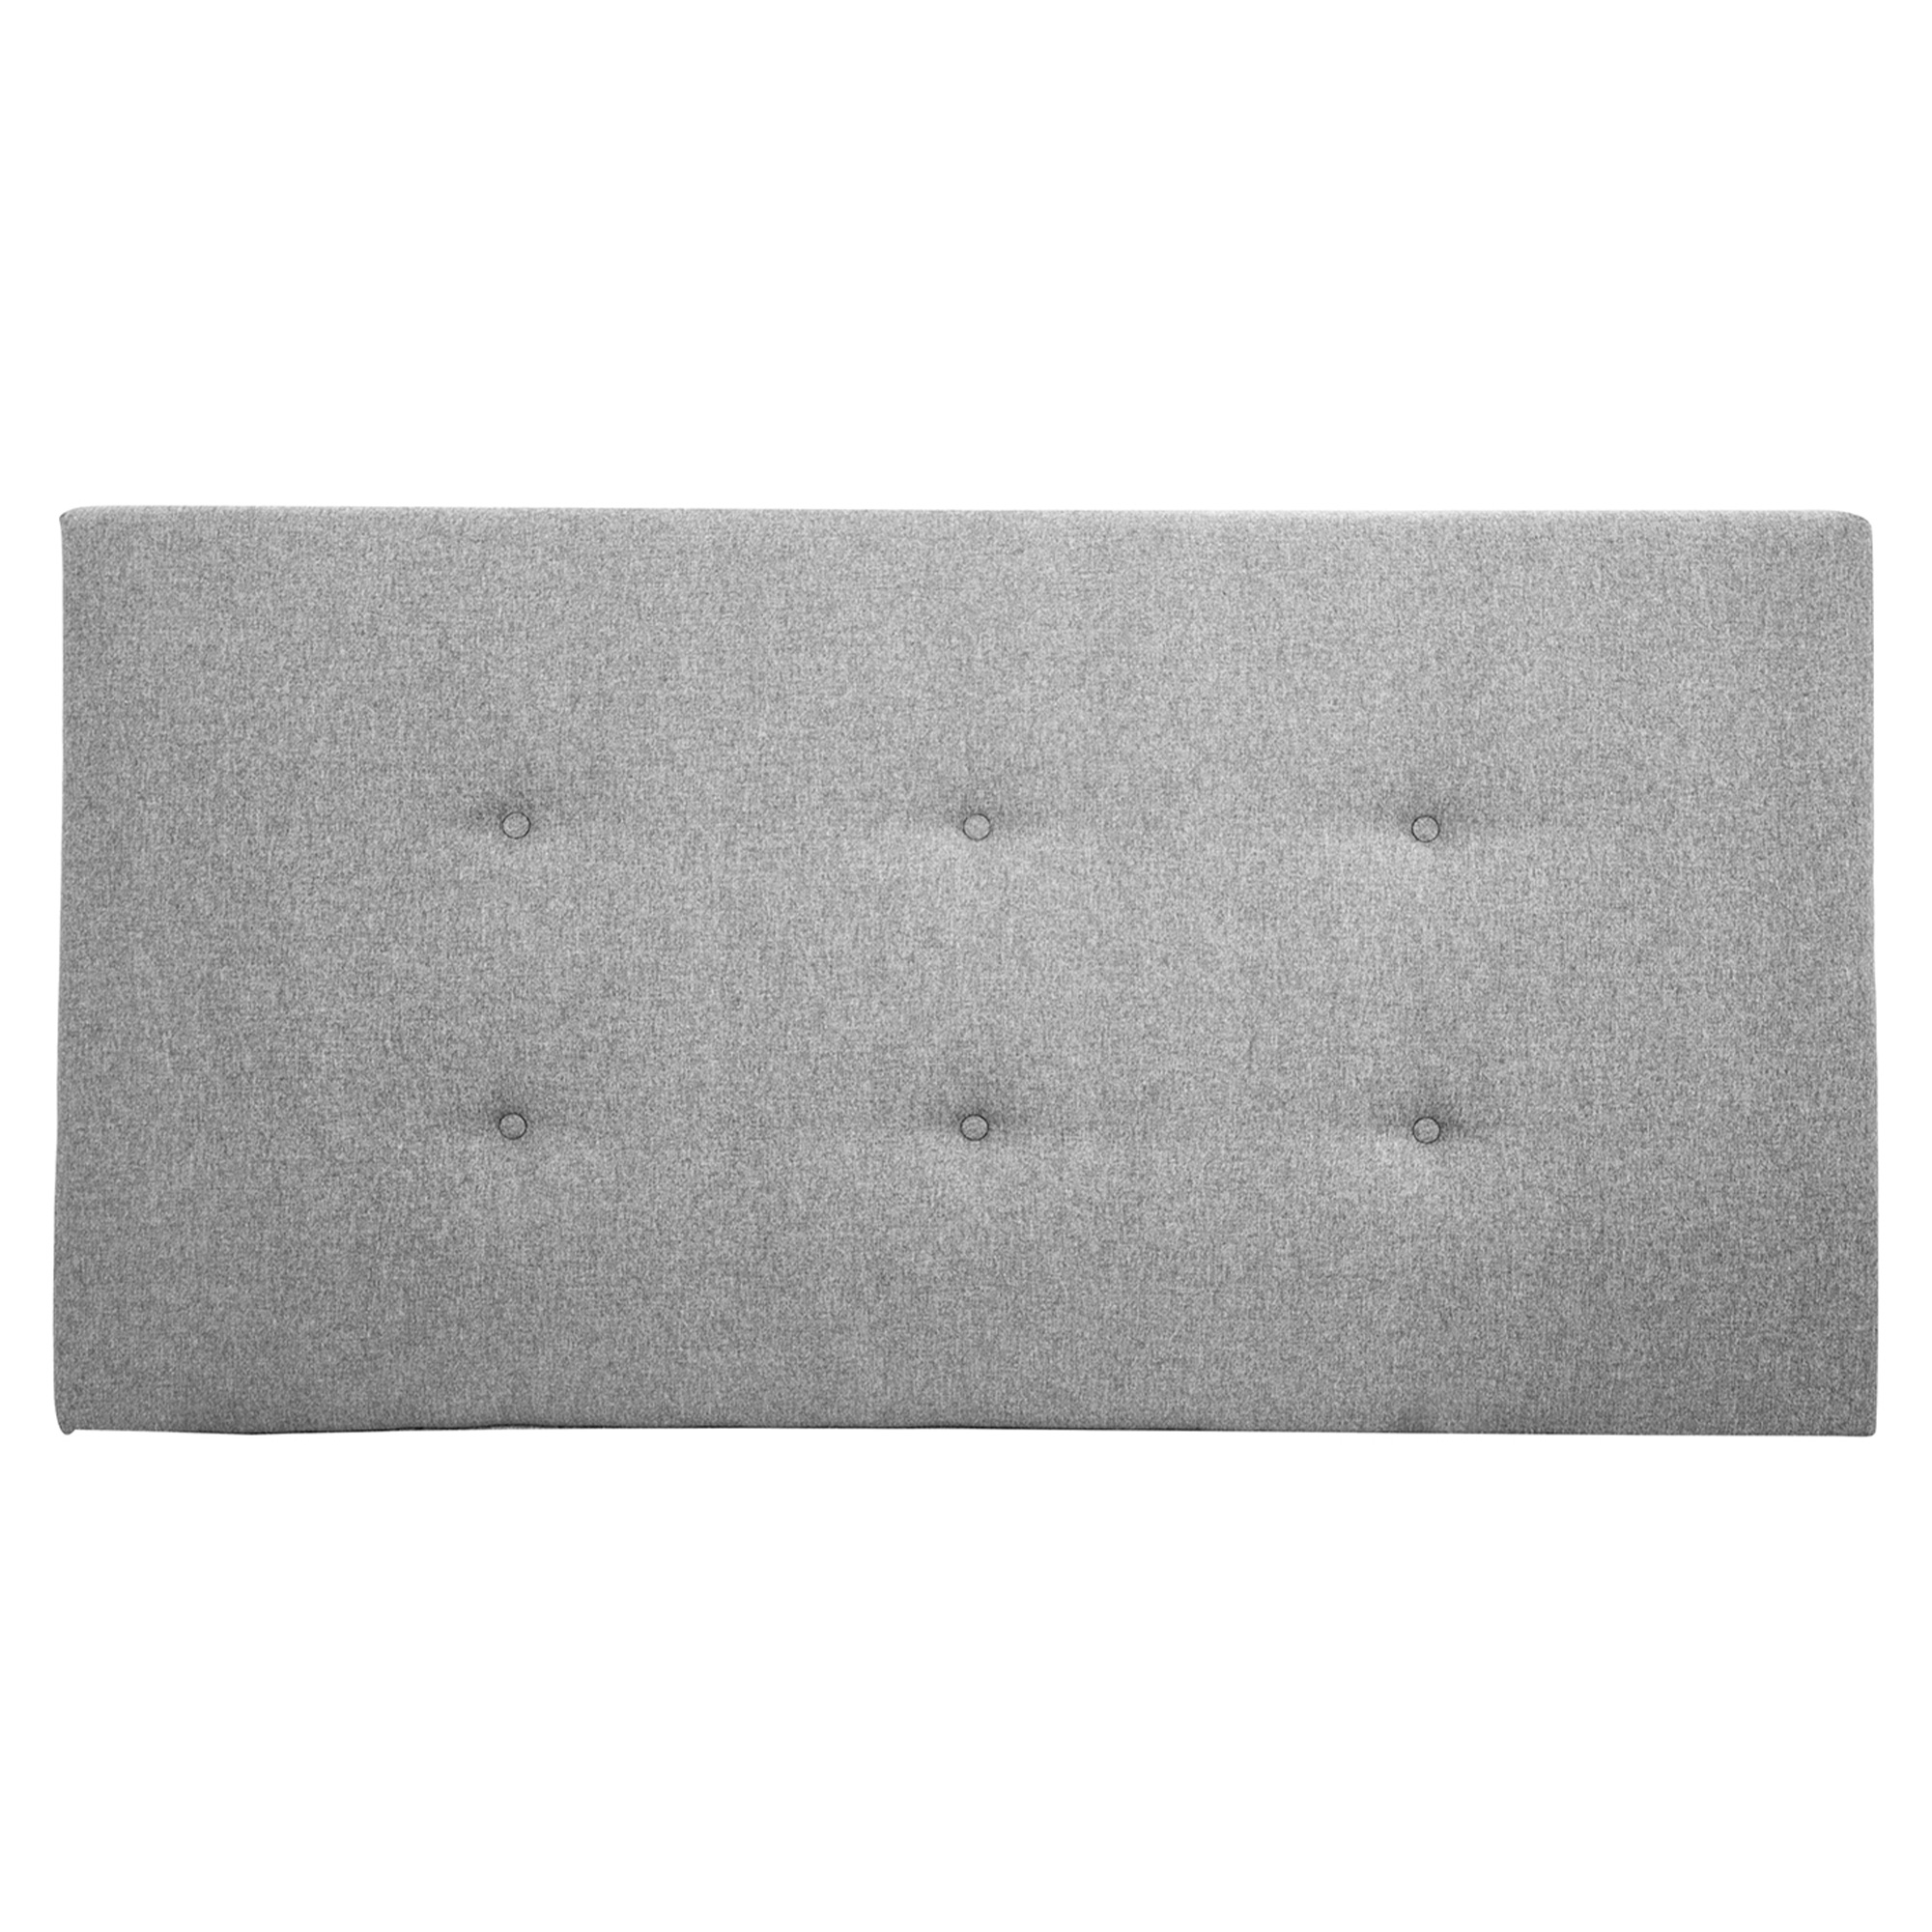 Tête de lit polyester couleur grise 160x80cm